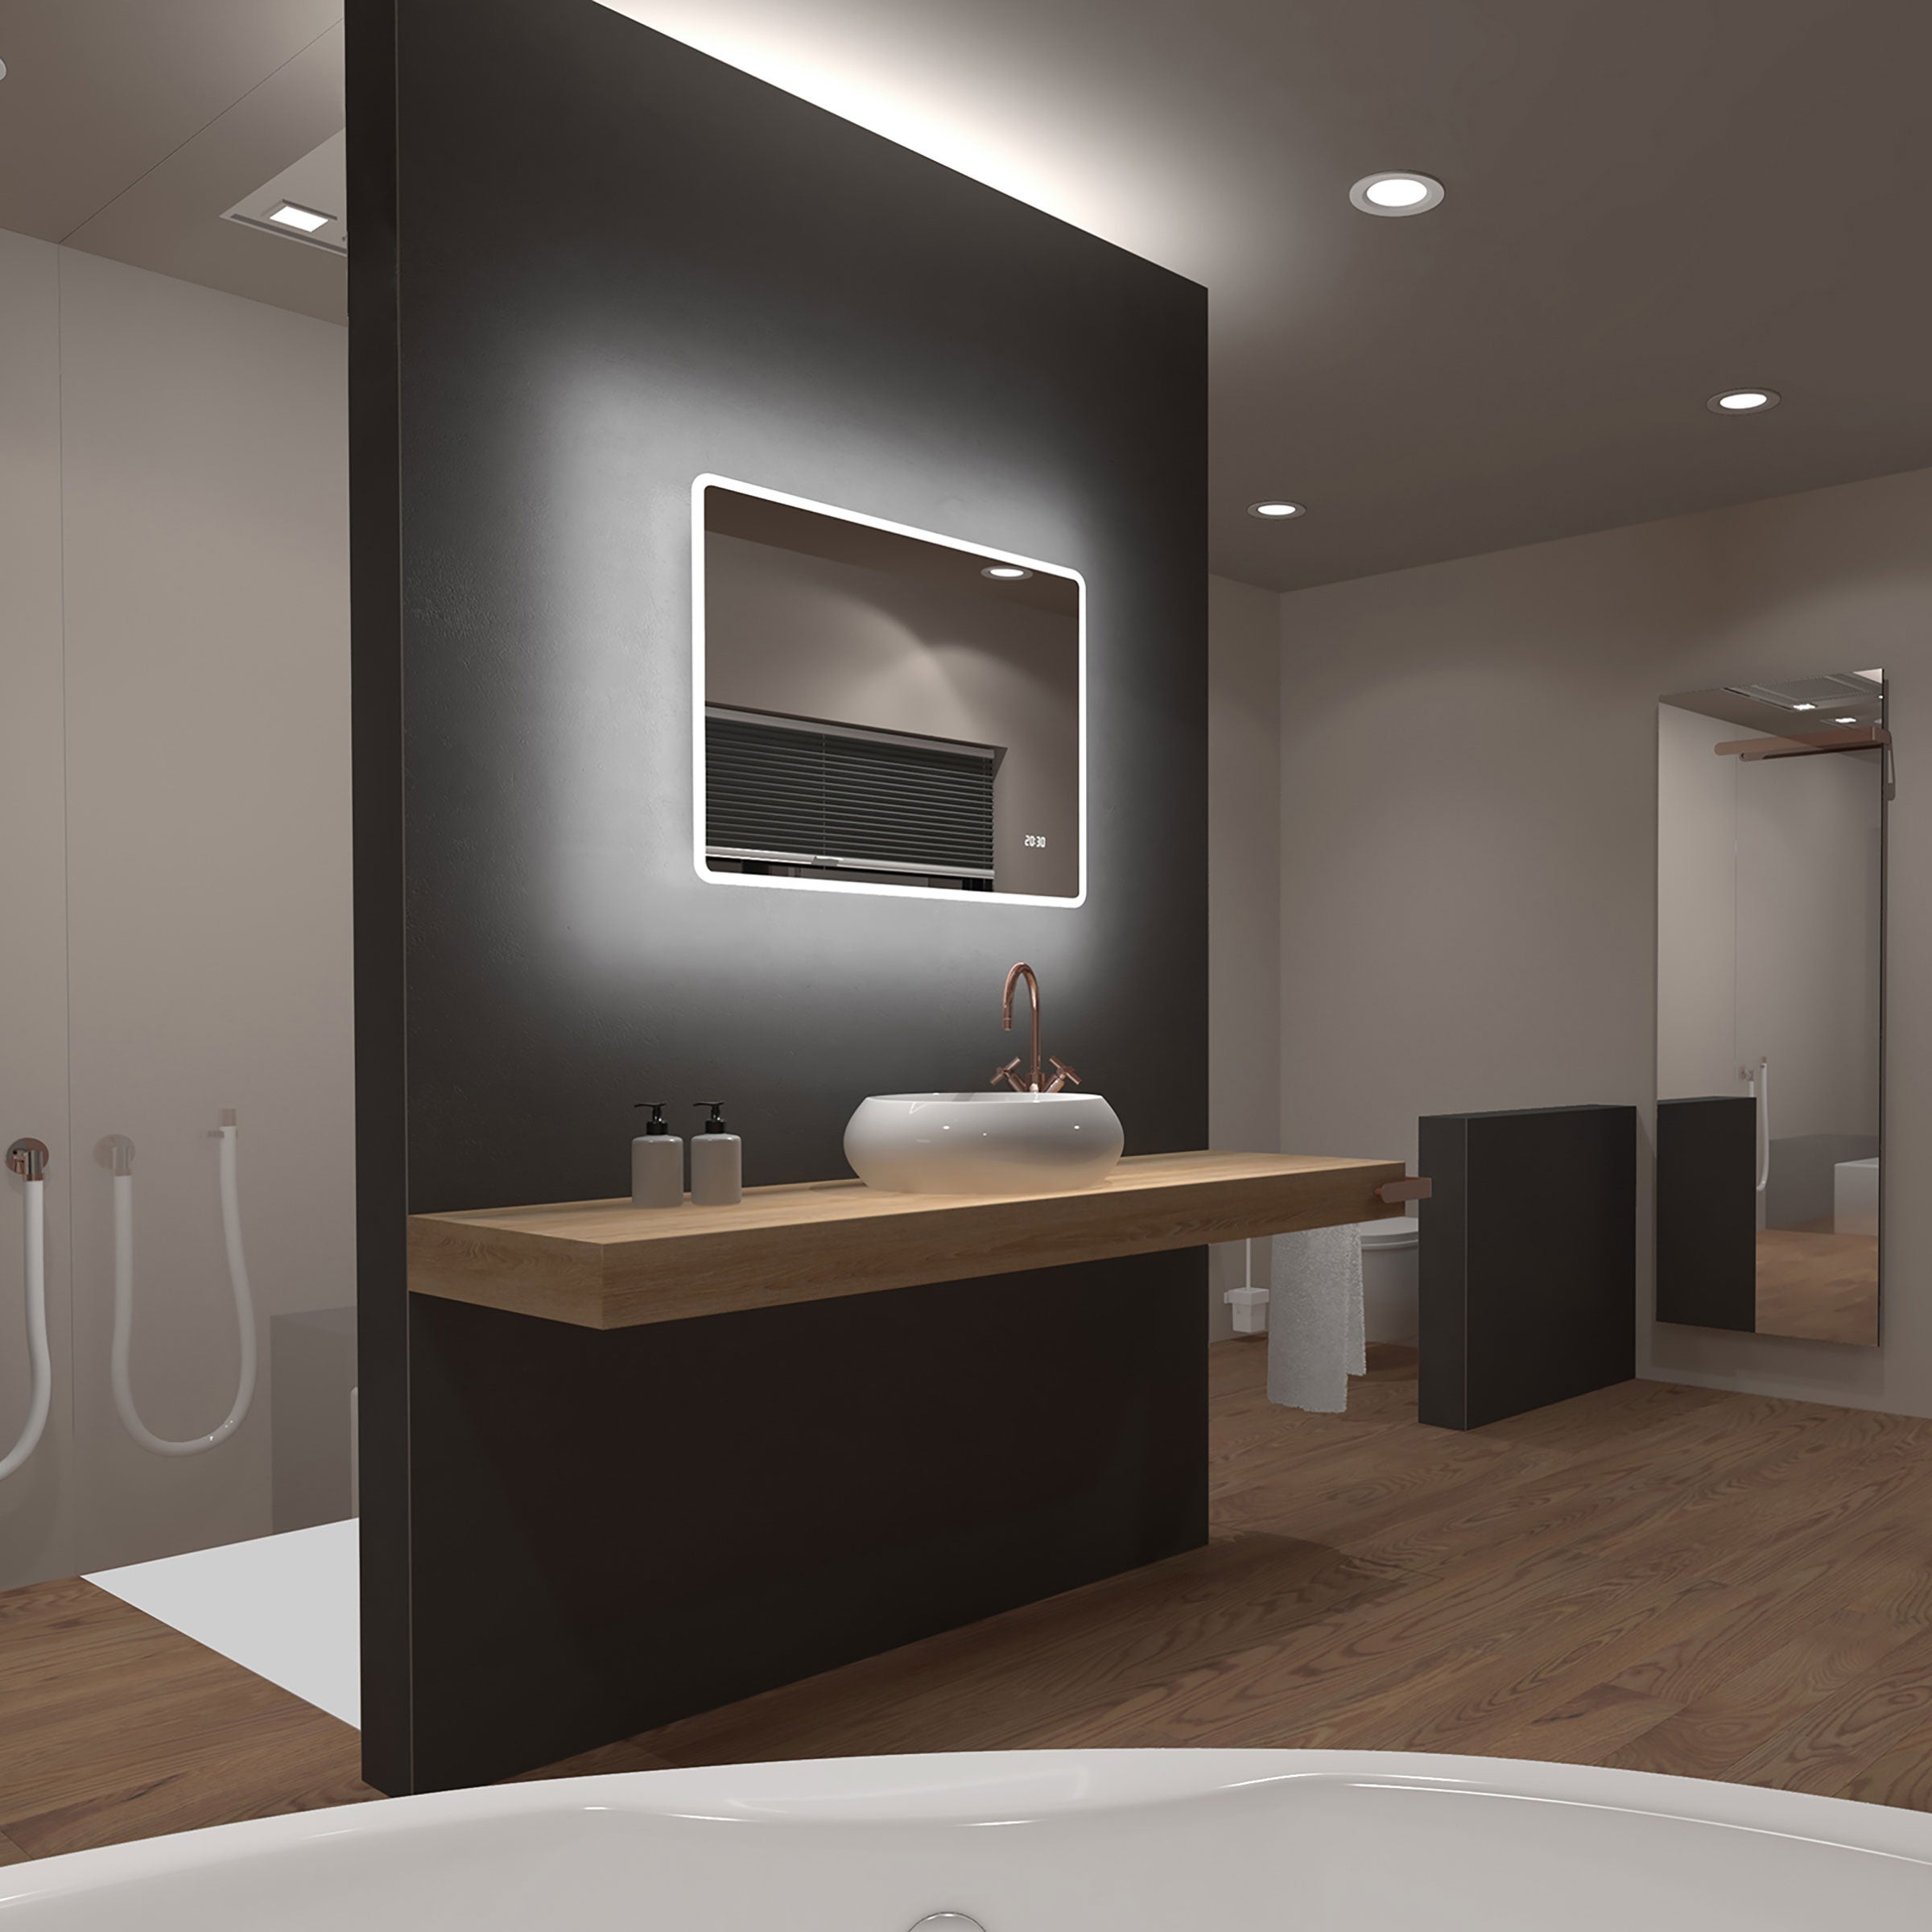 Miroir salle de bain Frame avec éclairage LED - 60x80cm - AURLANE